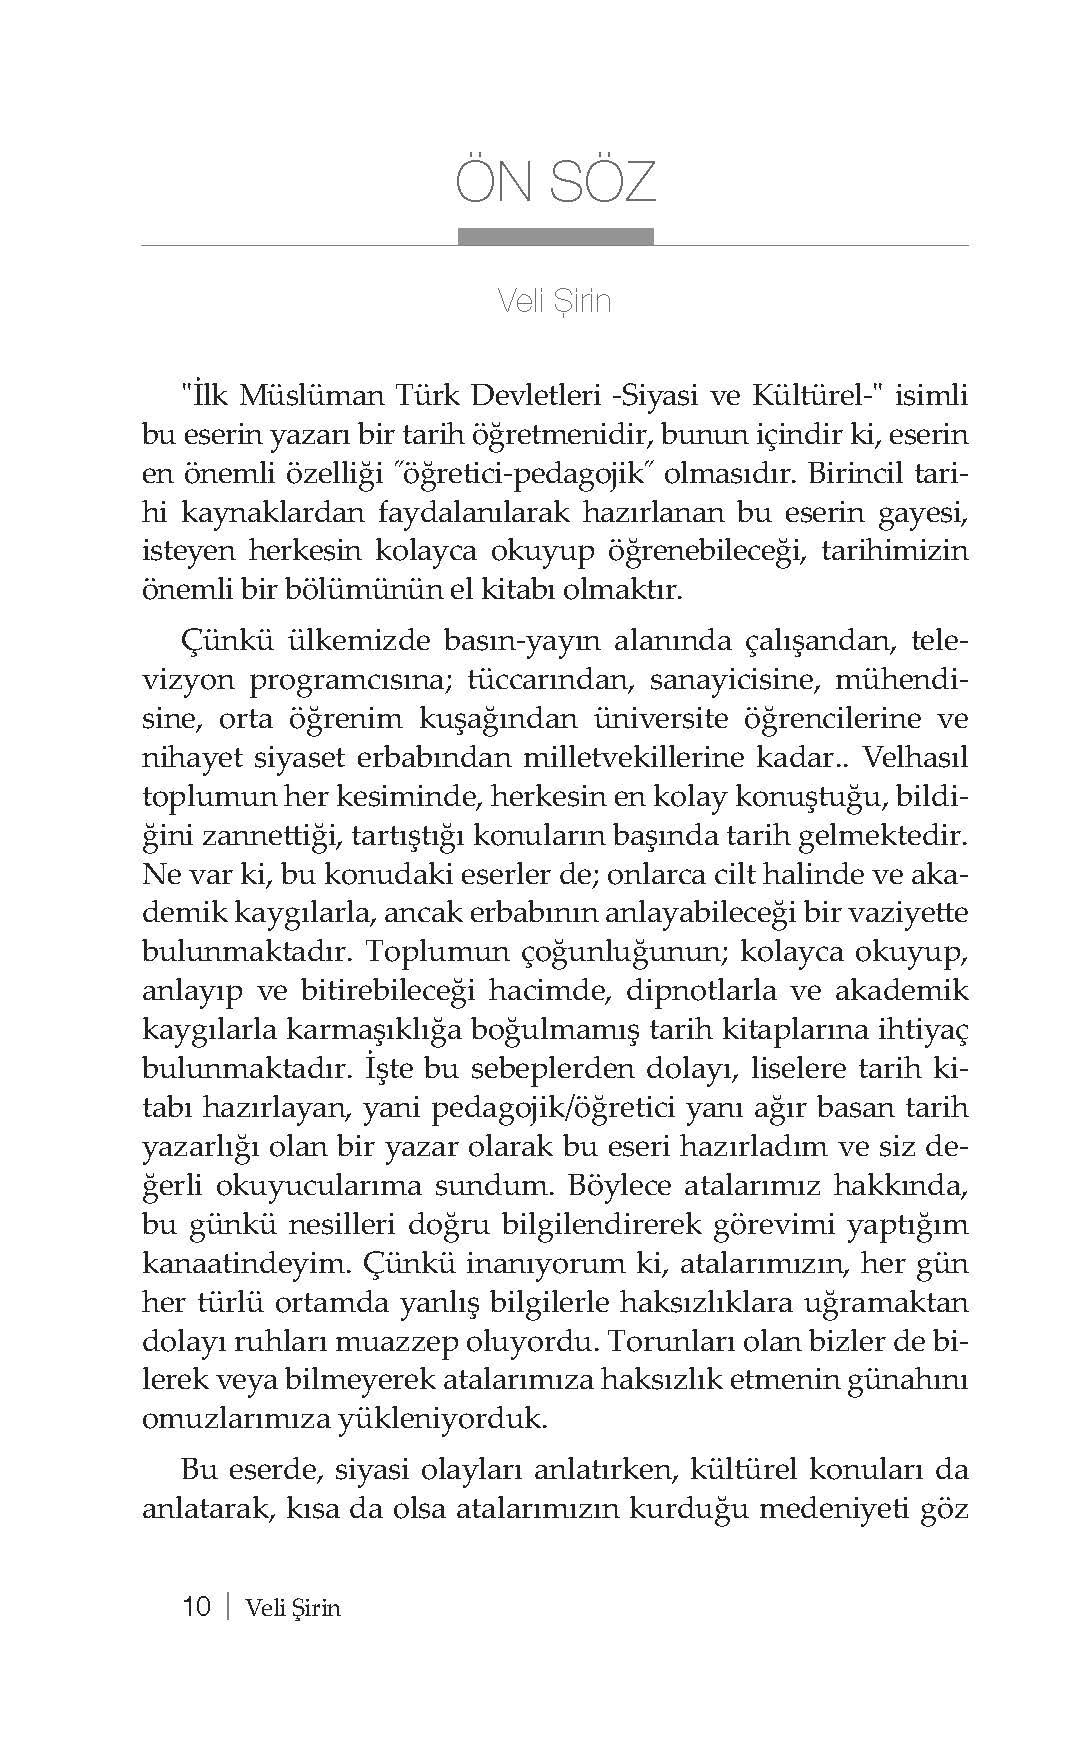 İlk Müslüman Türk Devletleri - Veli Şirin